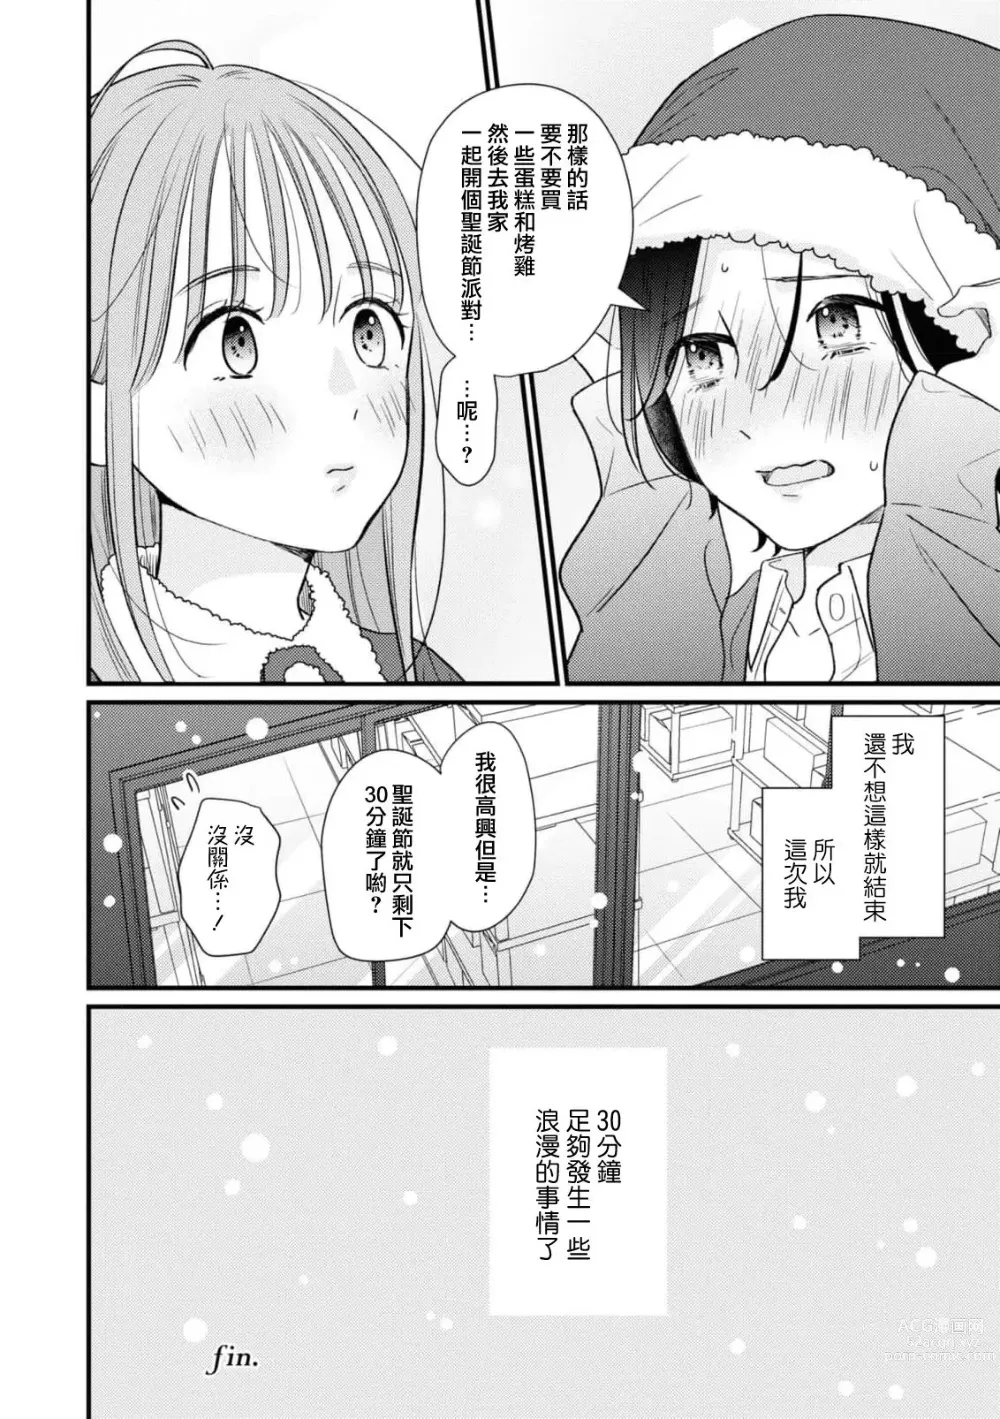 Page 16 of manga 延长30分钟的浪漫